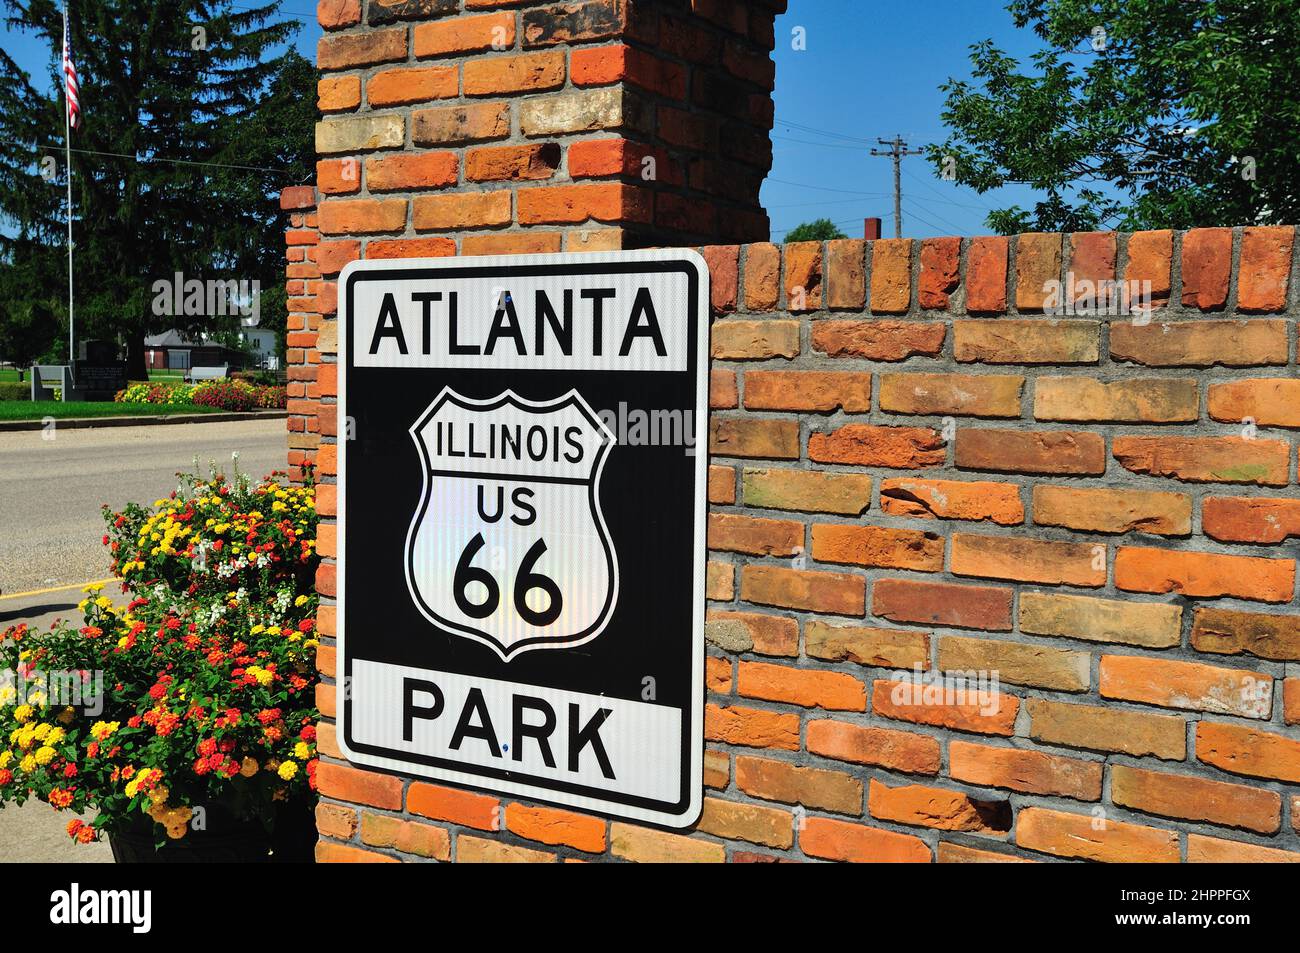 Atlanta, Illinois, USA. Stadt mit Identität zur Mother Road, US Route 66, ein Straßenschild auf einer Backsteinmauer ist eine Hommage an die berühmte Straße. Stockfoto